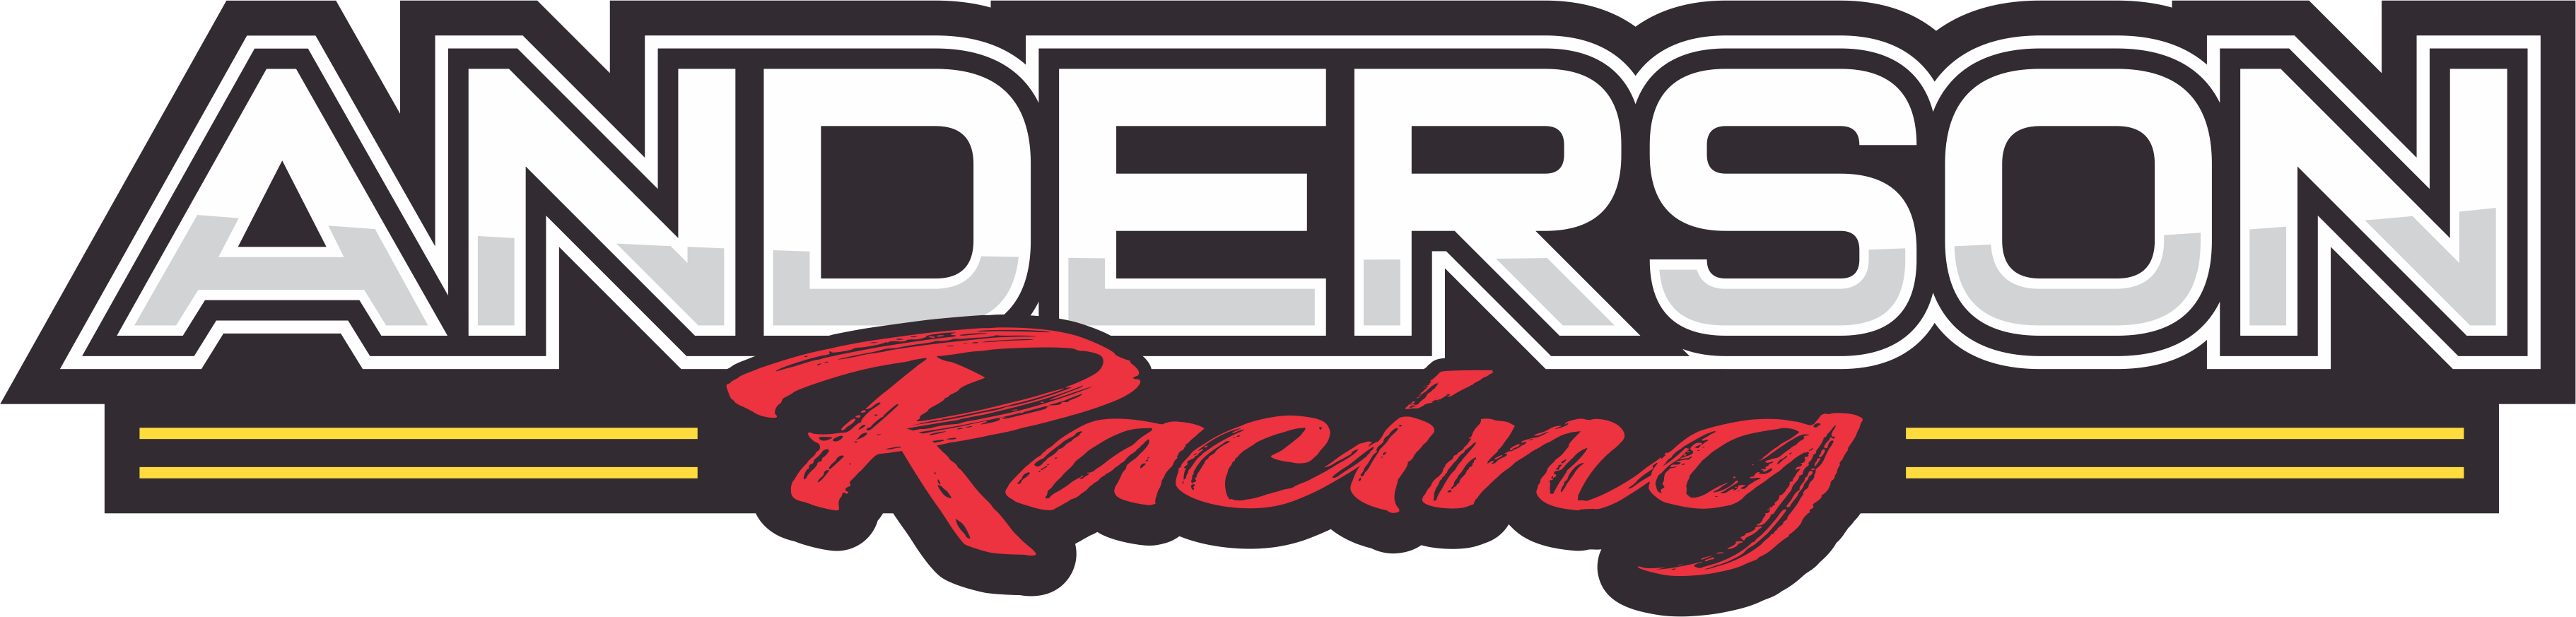 Logo de l'équipe Anderson Racing